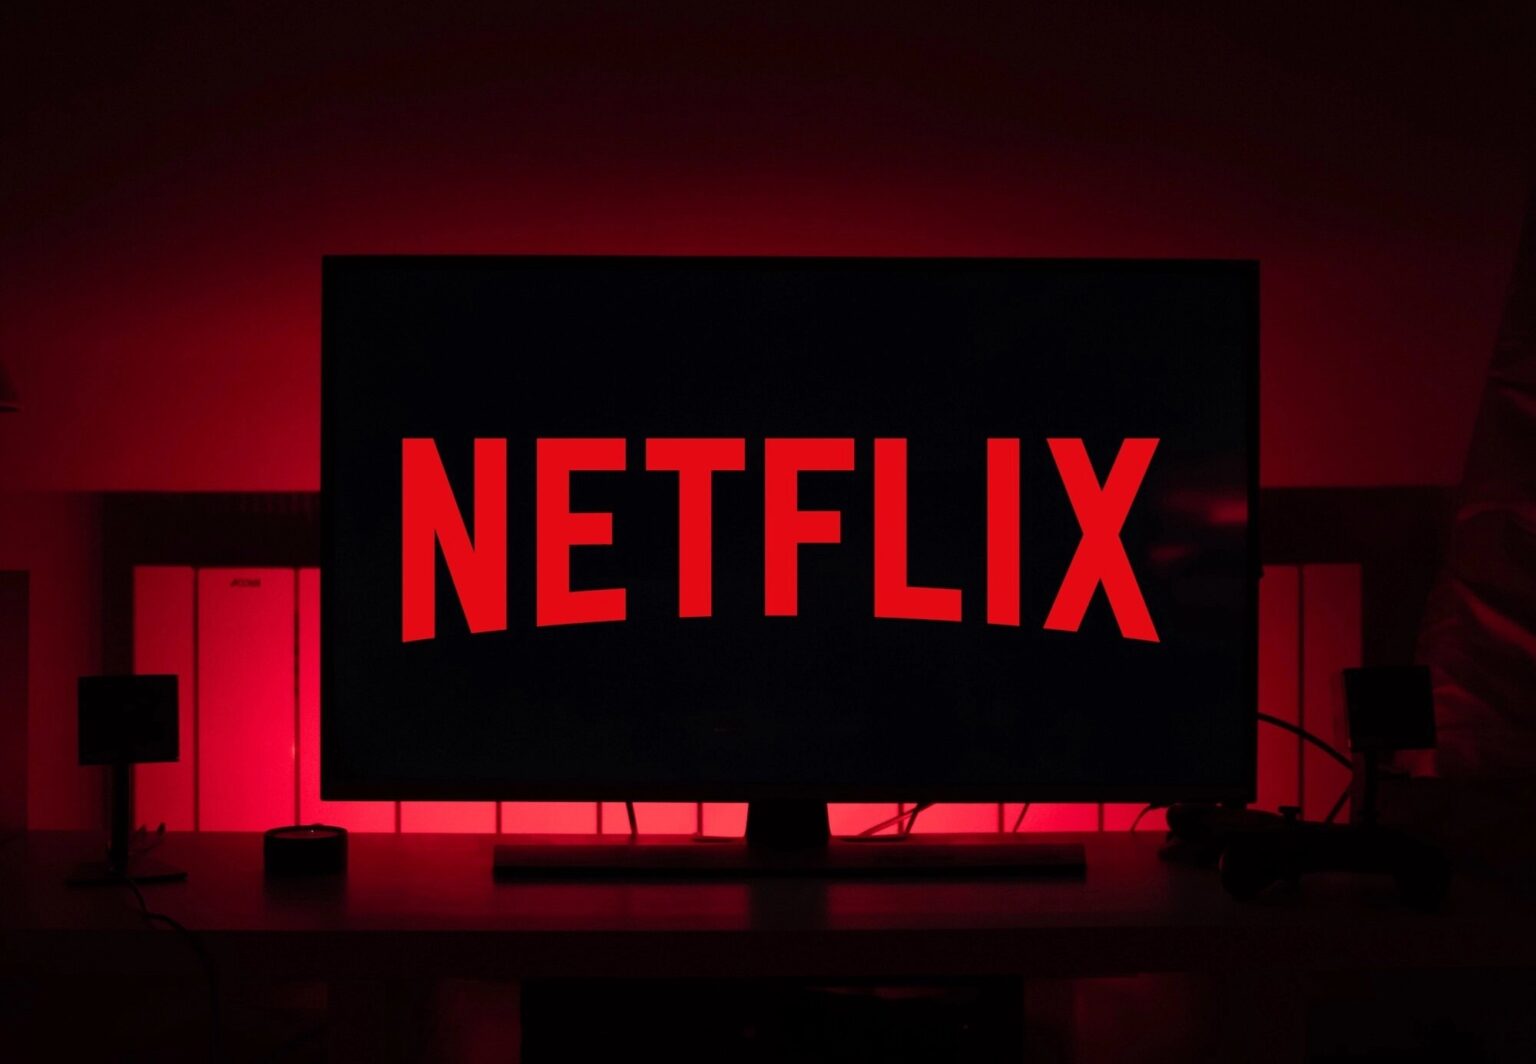 ¿Aburrido de ver siempre lo mismo? Checa los mejores estrenos de Netflix para el mes de enero.